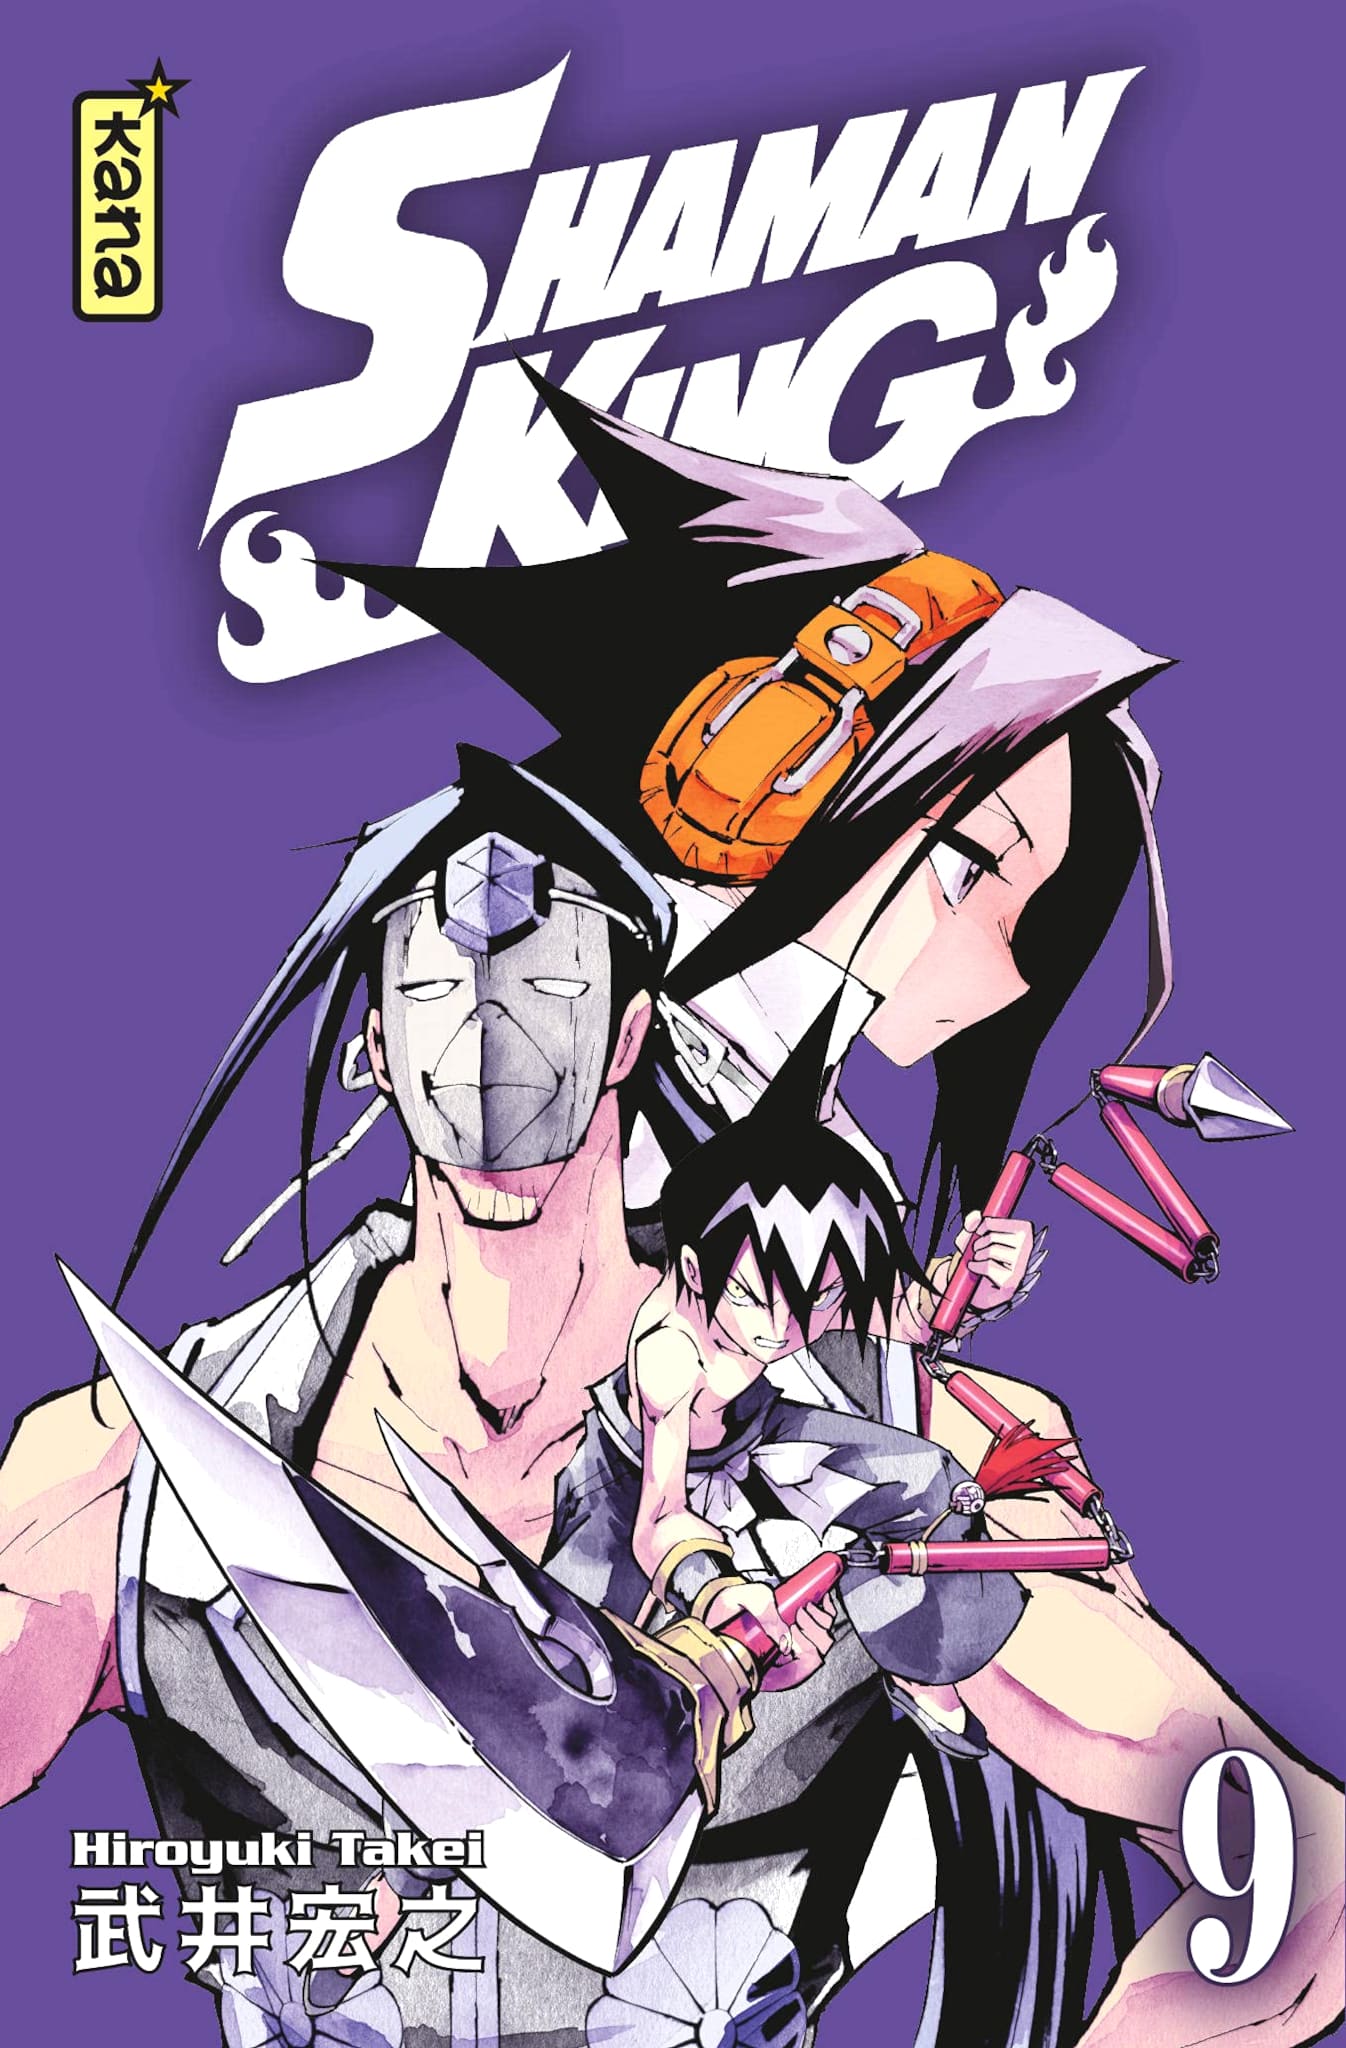 Tome 9 du manga Shaman King Star Edition